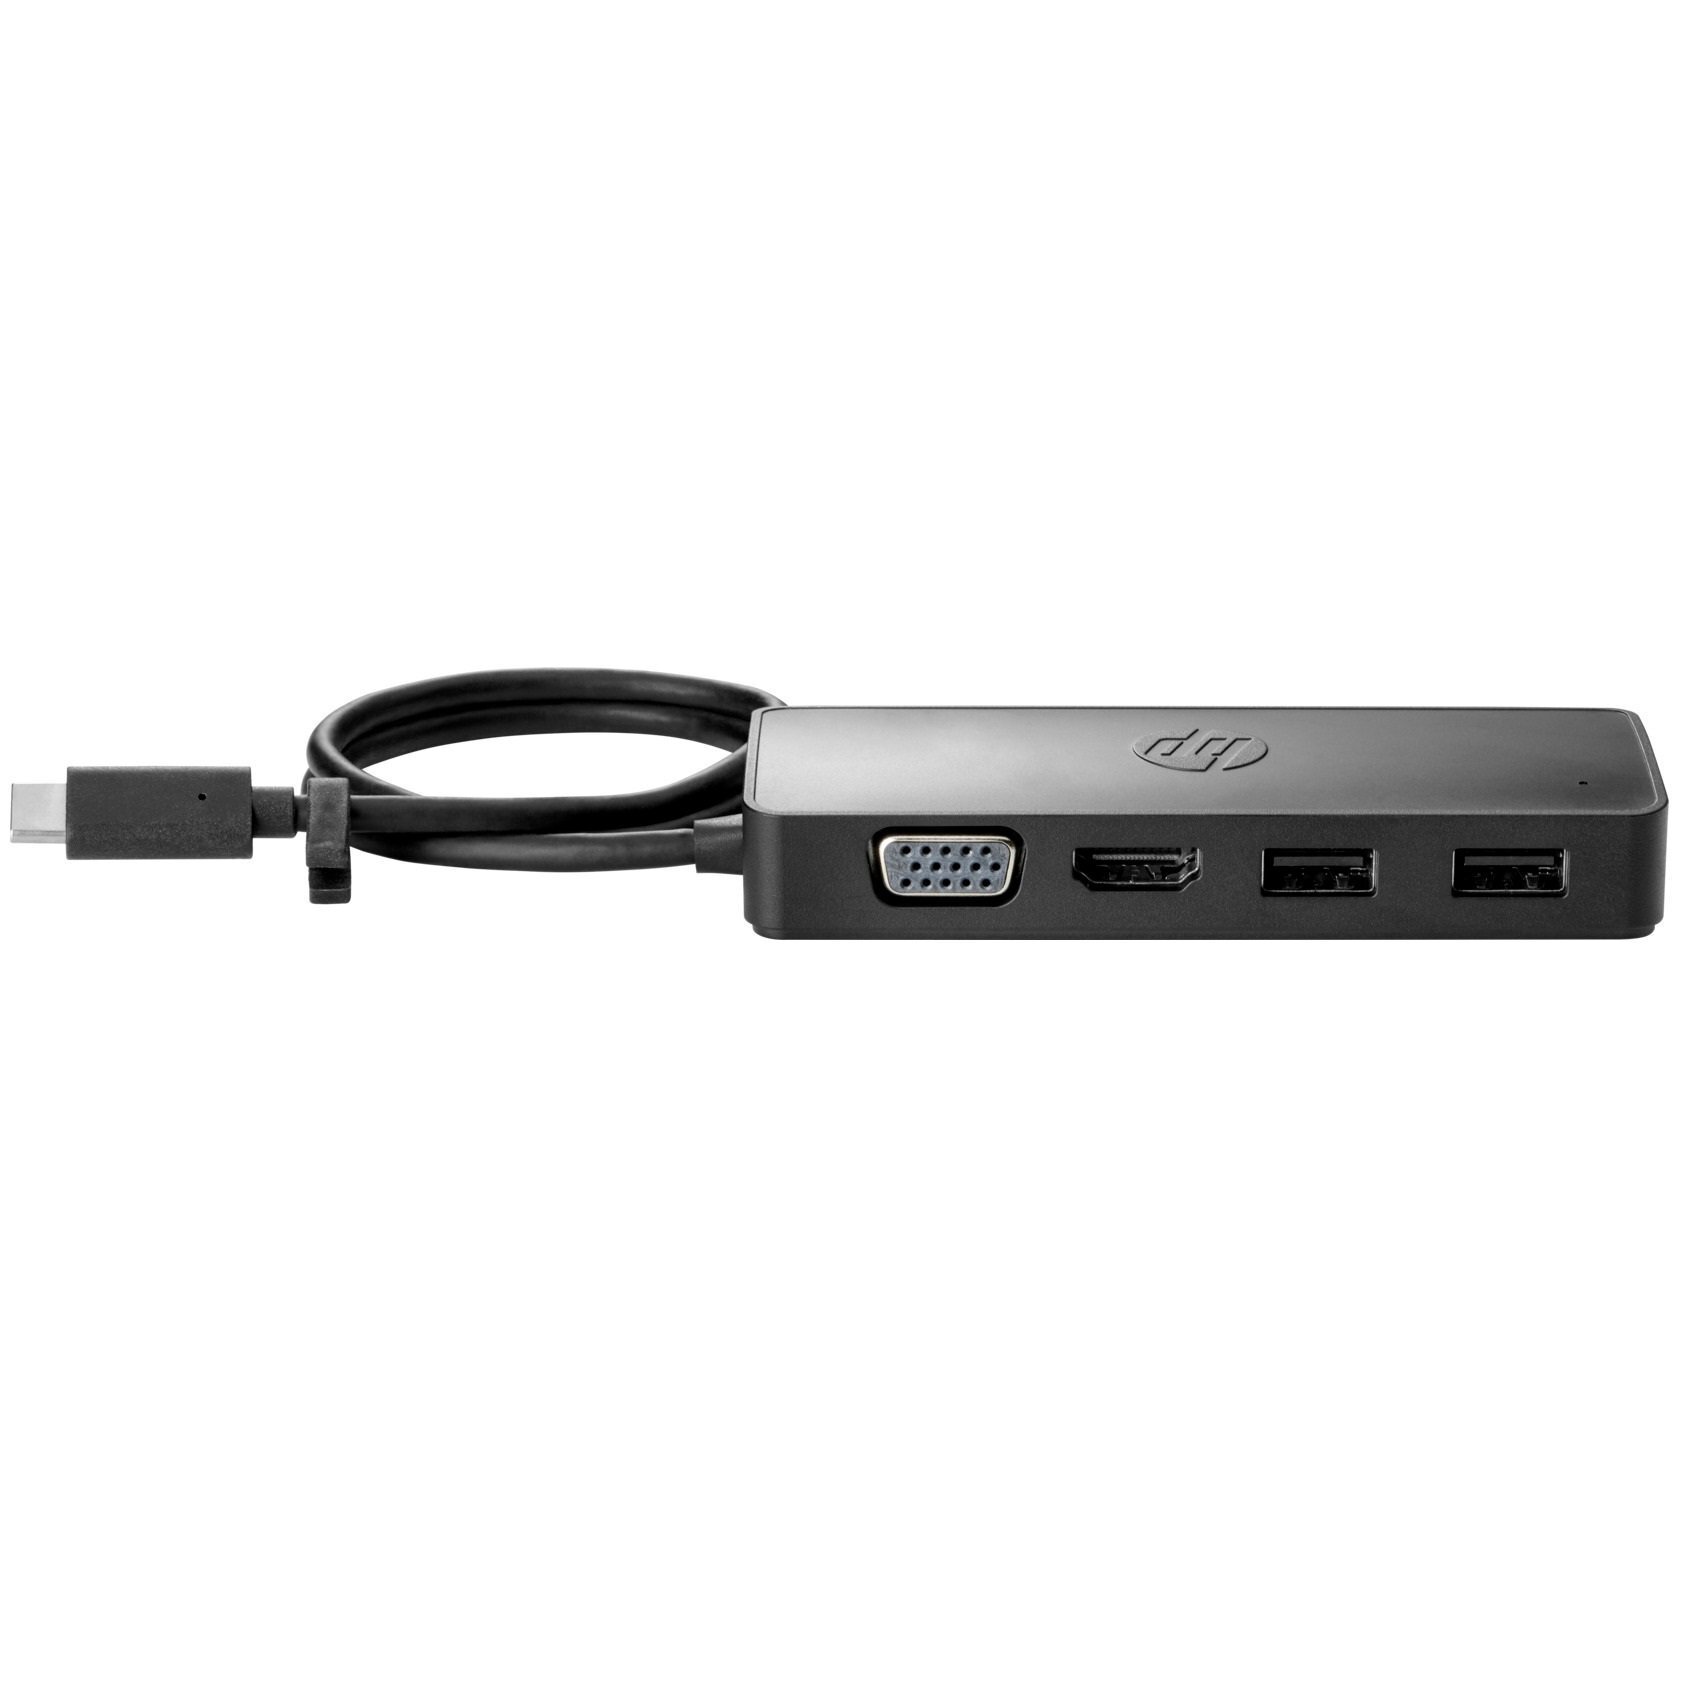 USB хаб HP USB-C Travel Hub G2 (235N8AA) фото 1